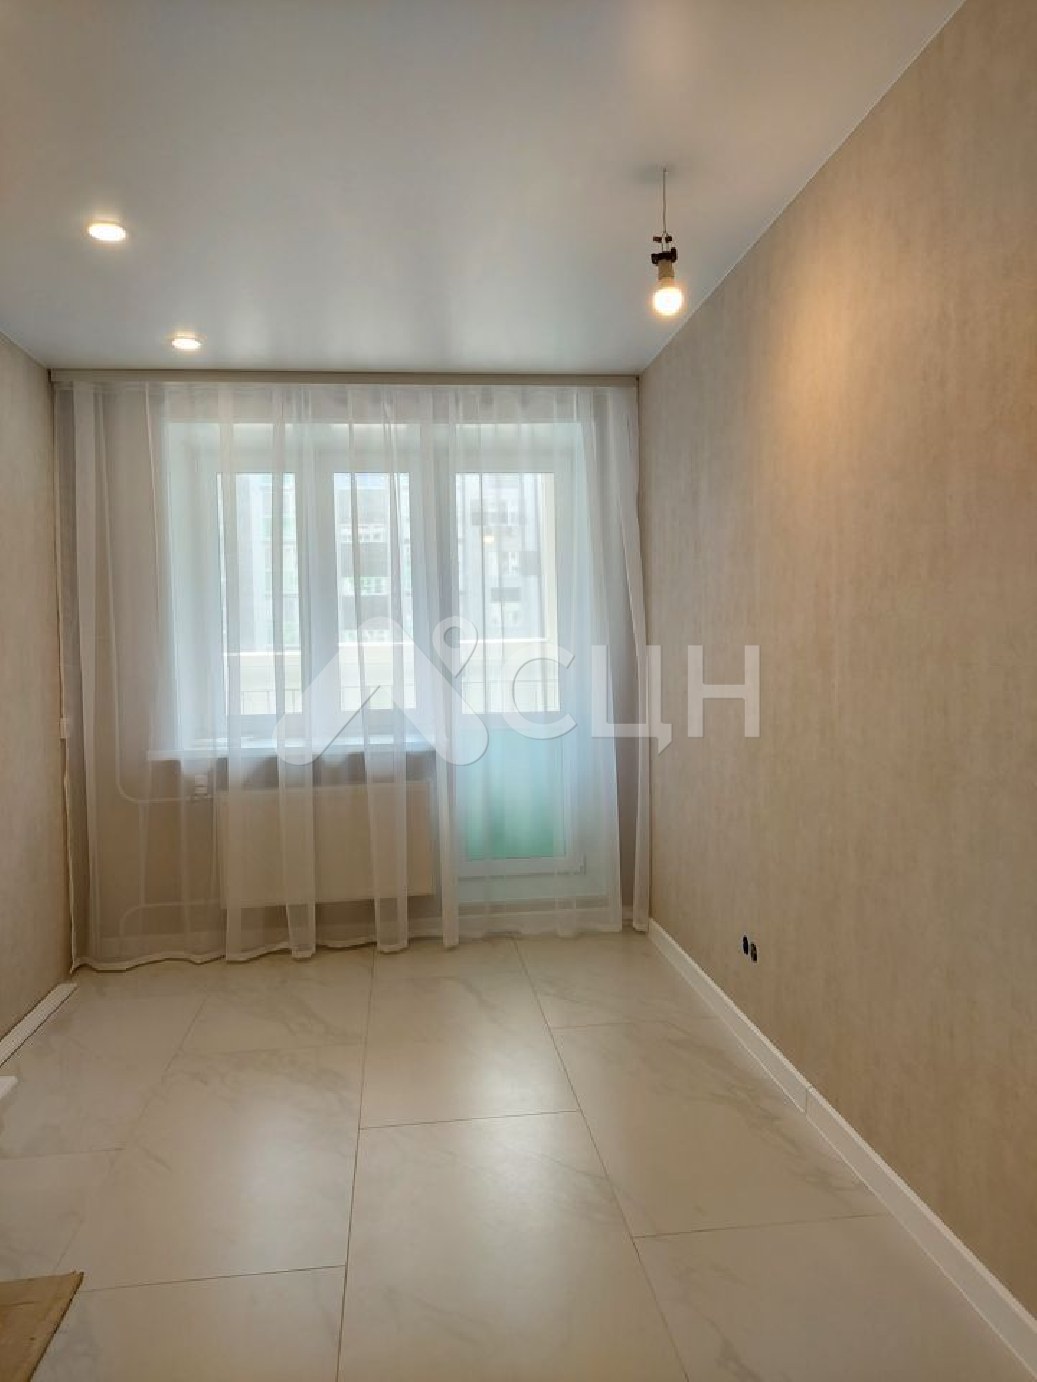 купить квартиру в сарове
: Г. Саров, улица Чкалова, 55, 1-комн квартира, этаж 1 из 5, продажа.